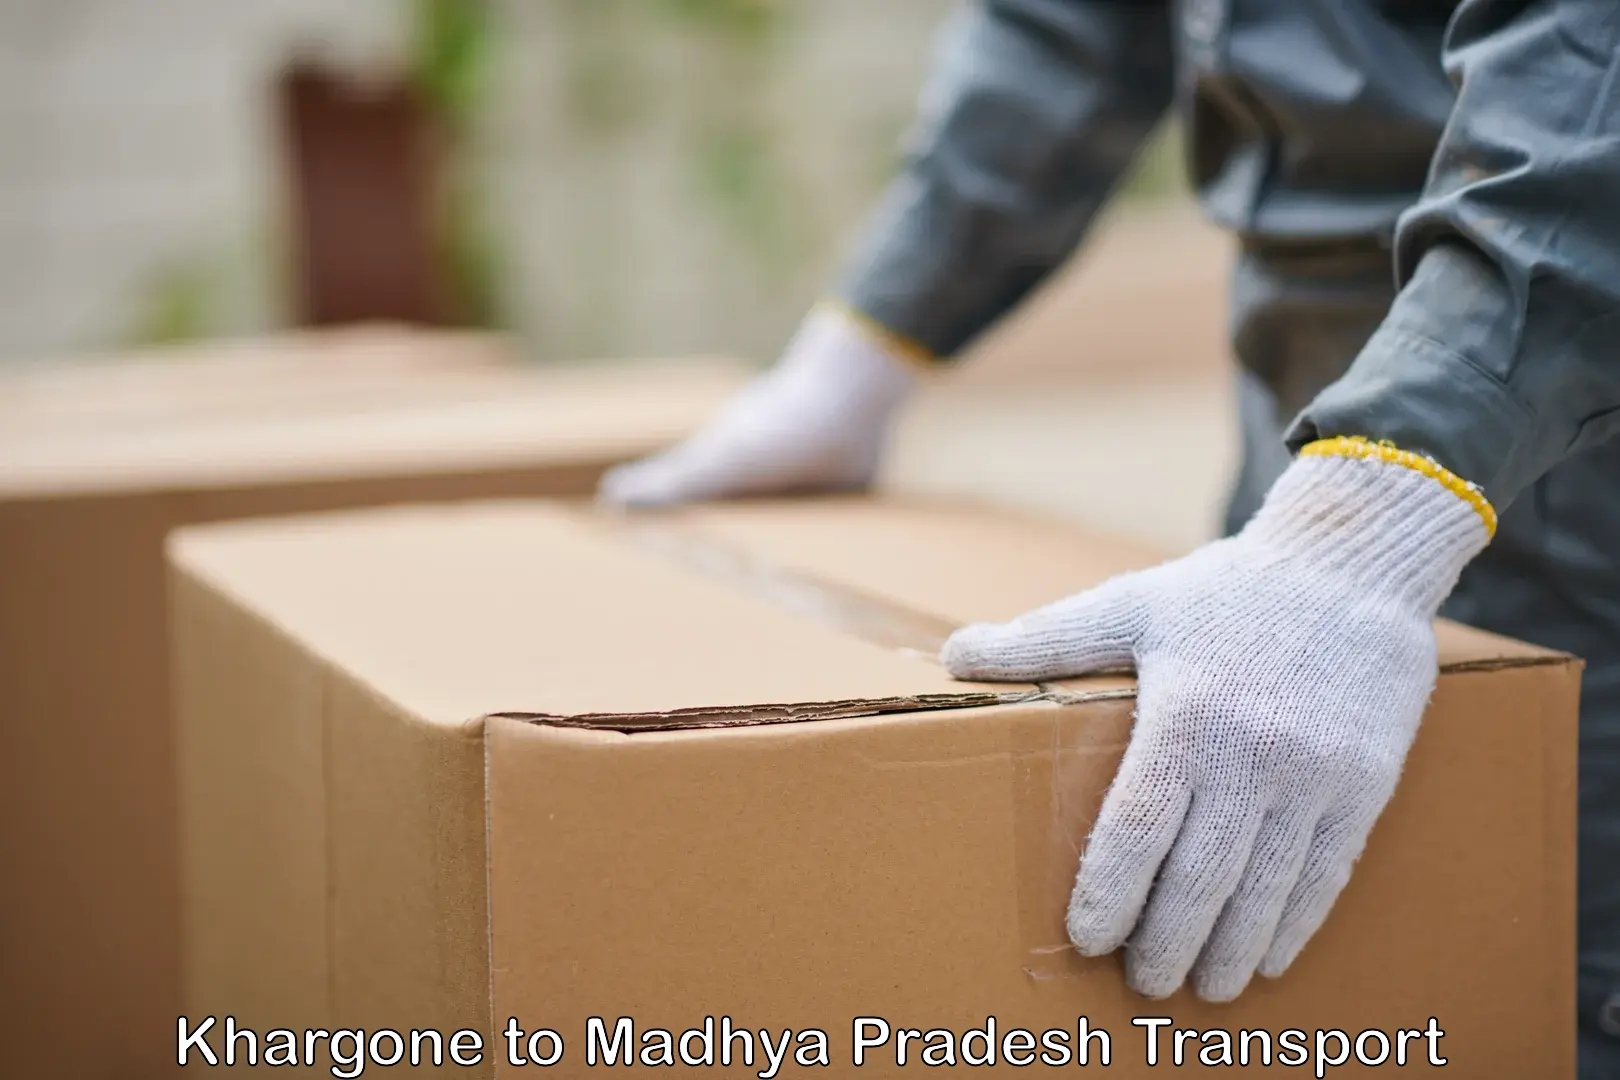 Daily parcel service transport Khargone to Madhya Pradesh